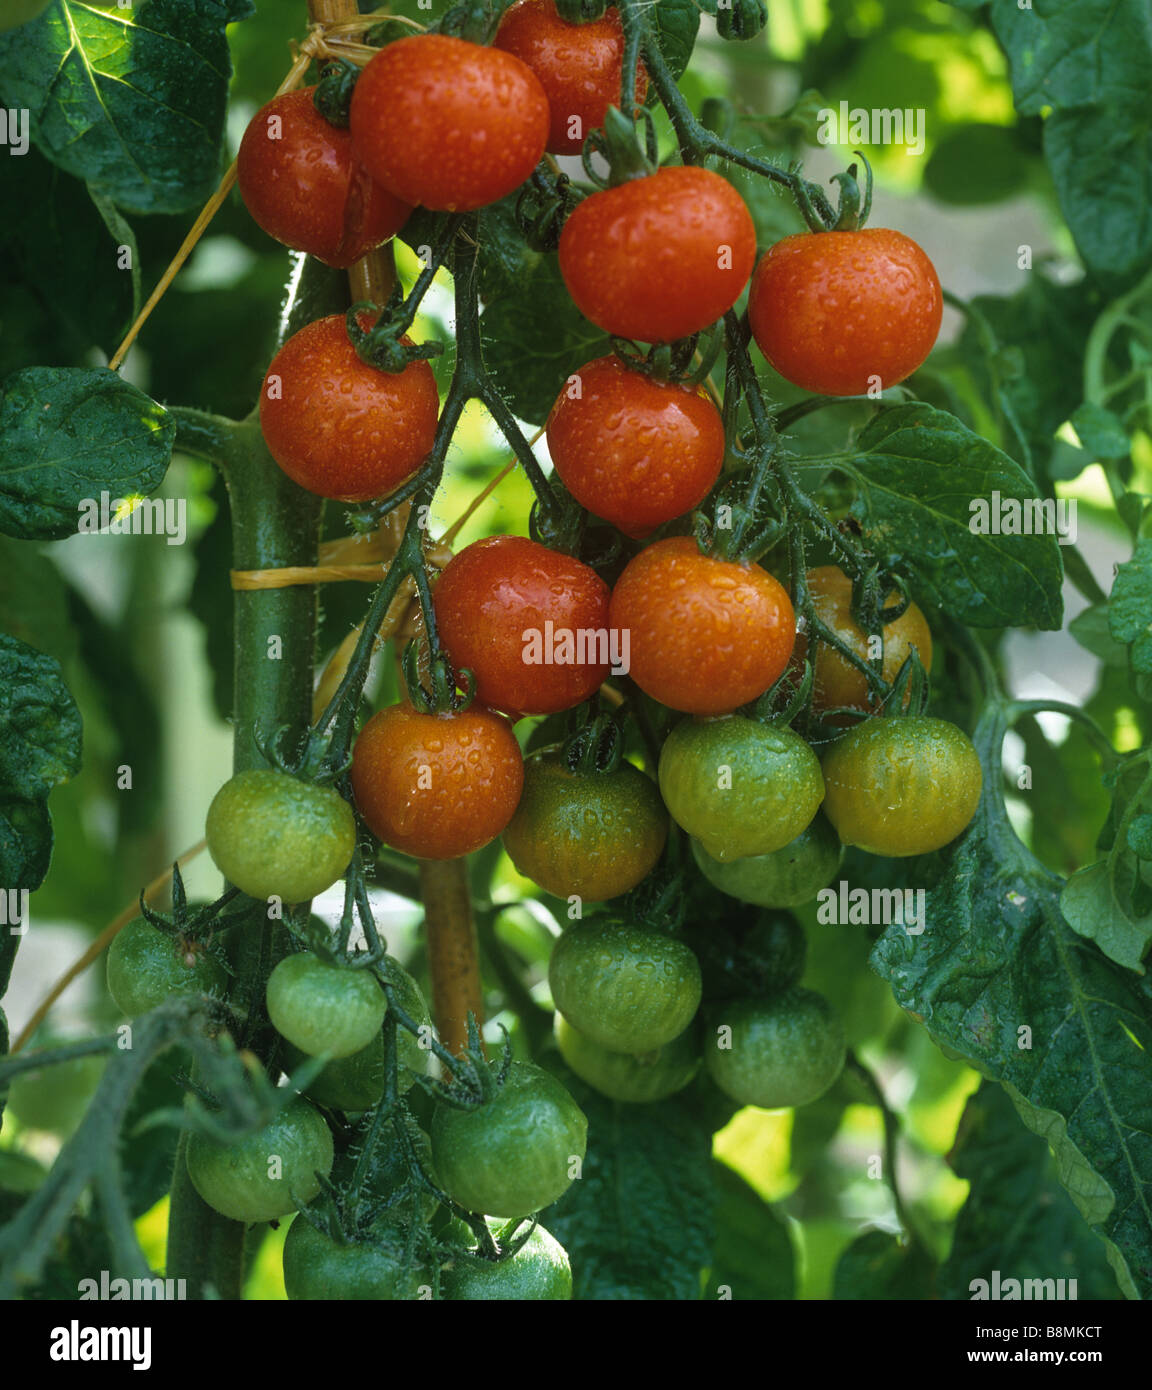 Armadura de maduración de tomates cherry jardineros deleitar con las gotas de agua después de regar Foto de stock